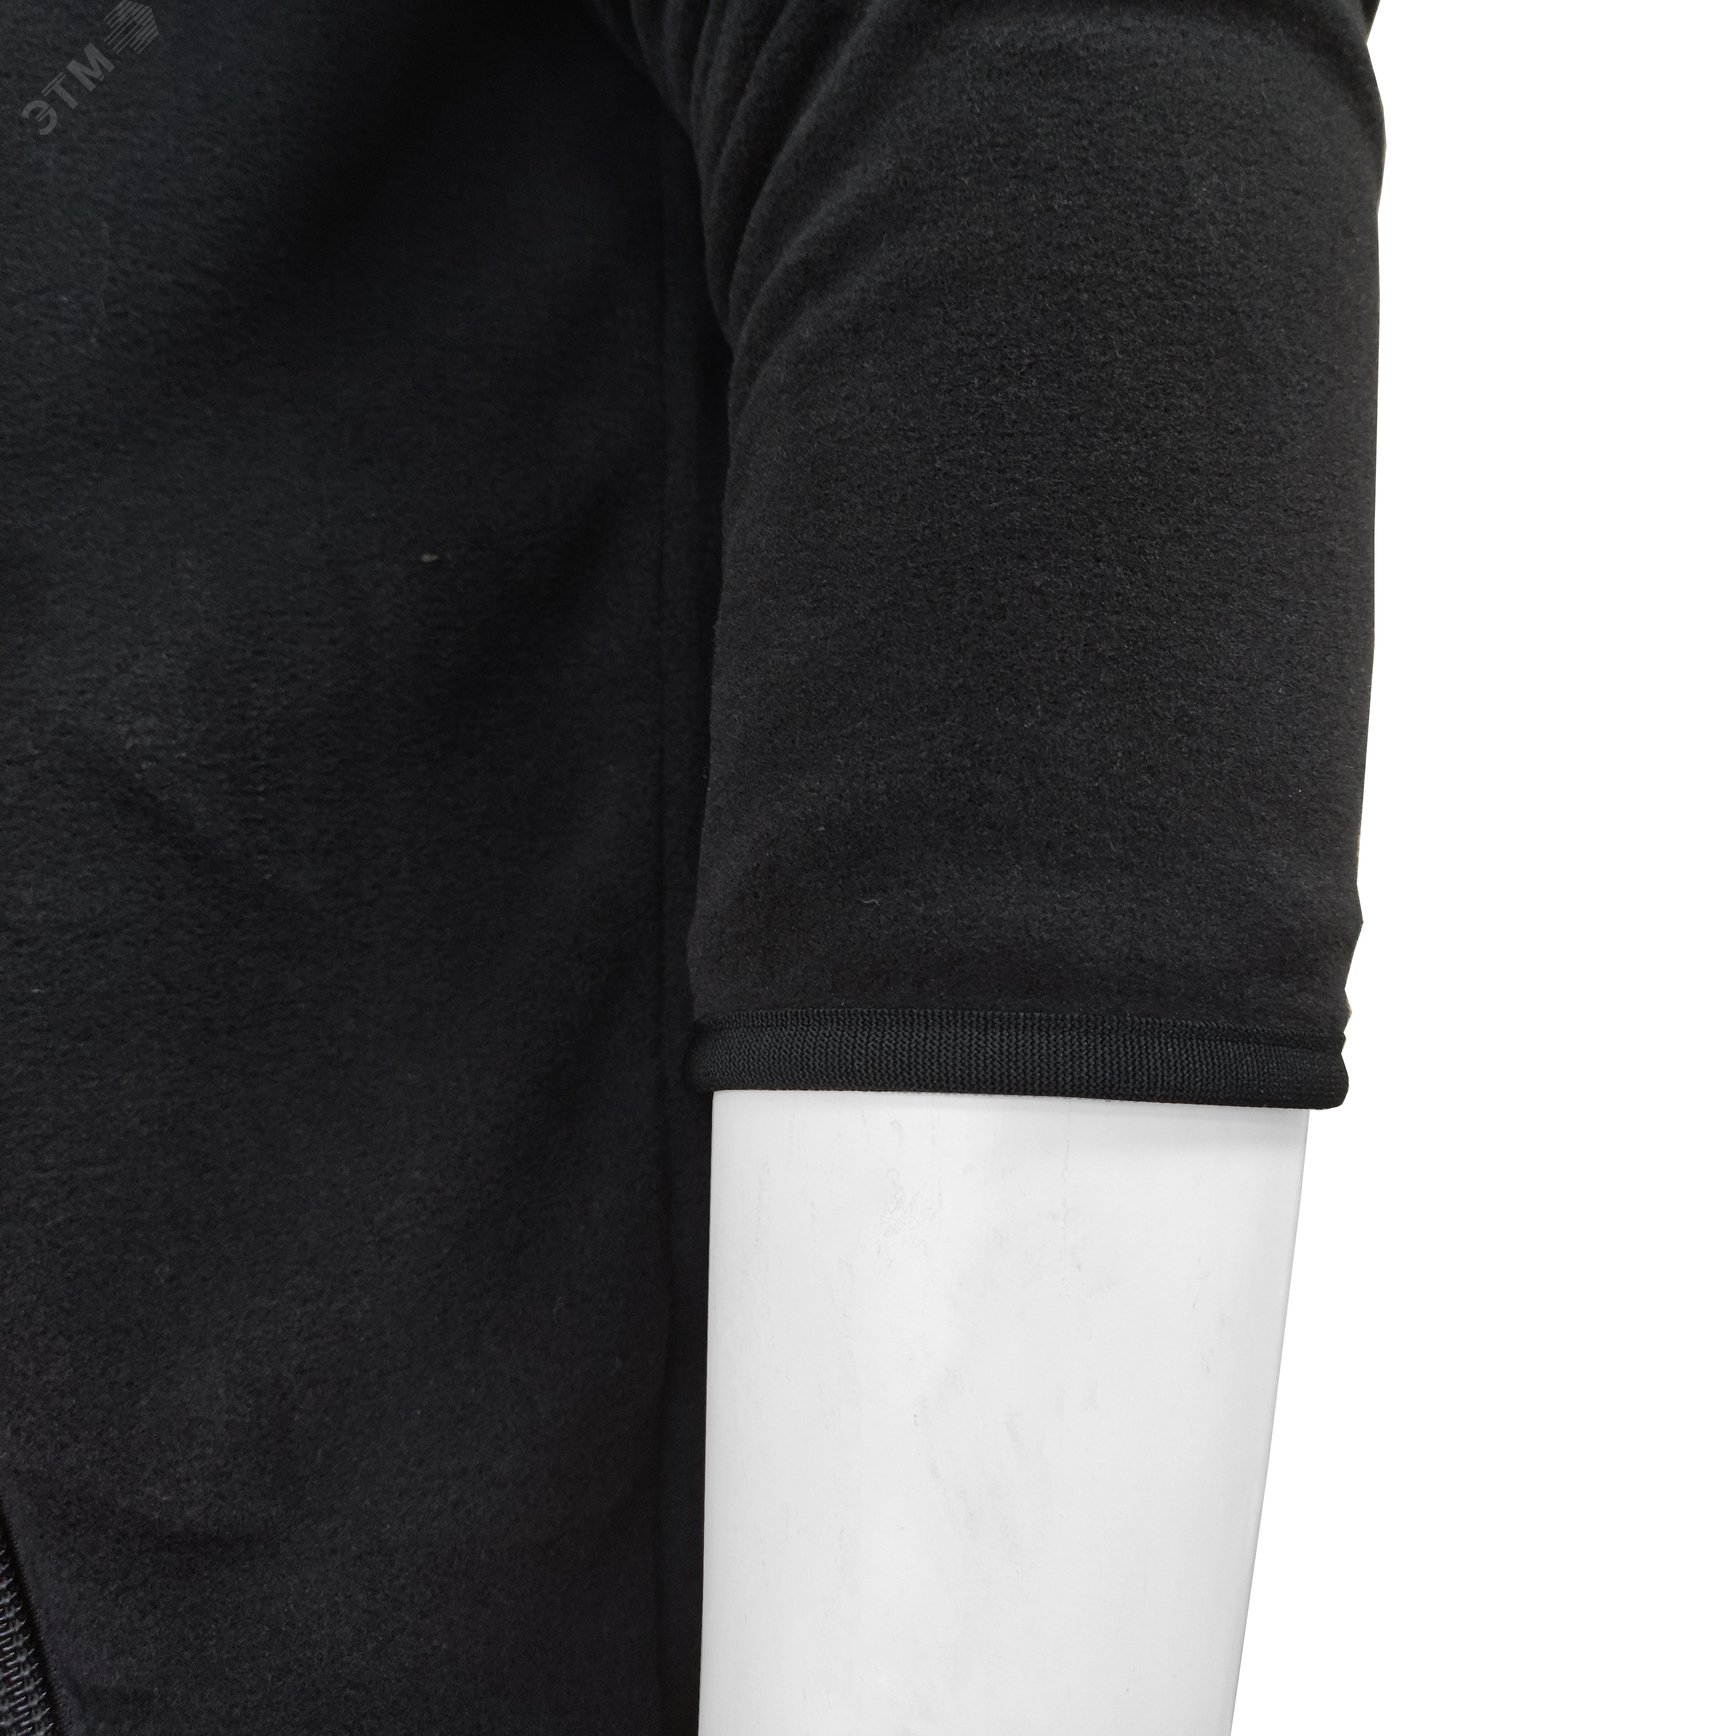 Куртка флисовая арт. JF-01 на молнии цв. чёрный 44-46  р. S 142300 Эталон-Спецодежда - превью 10